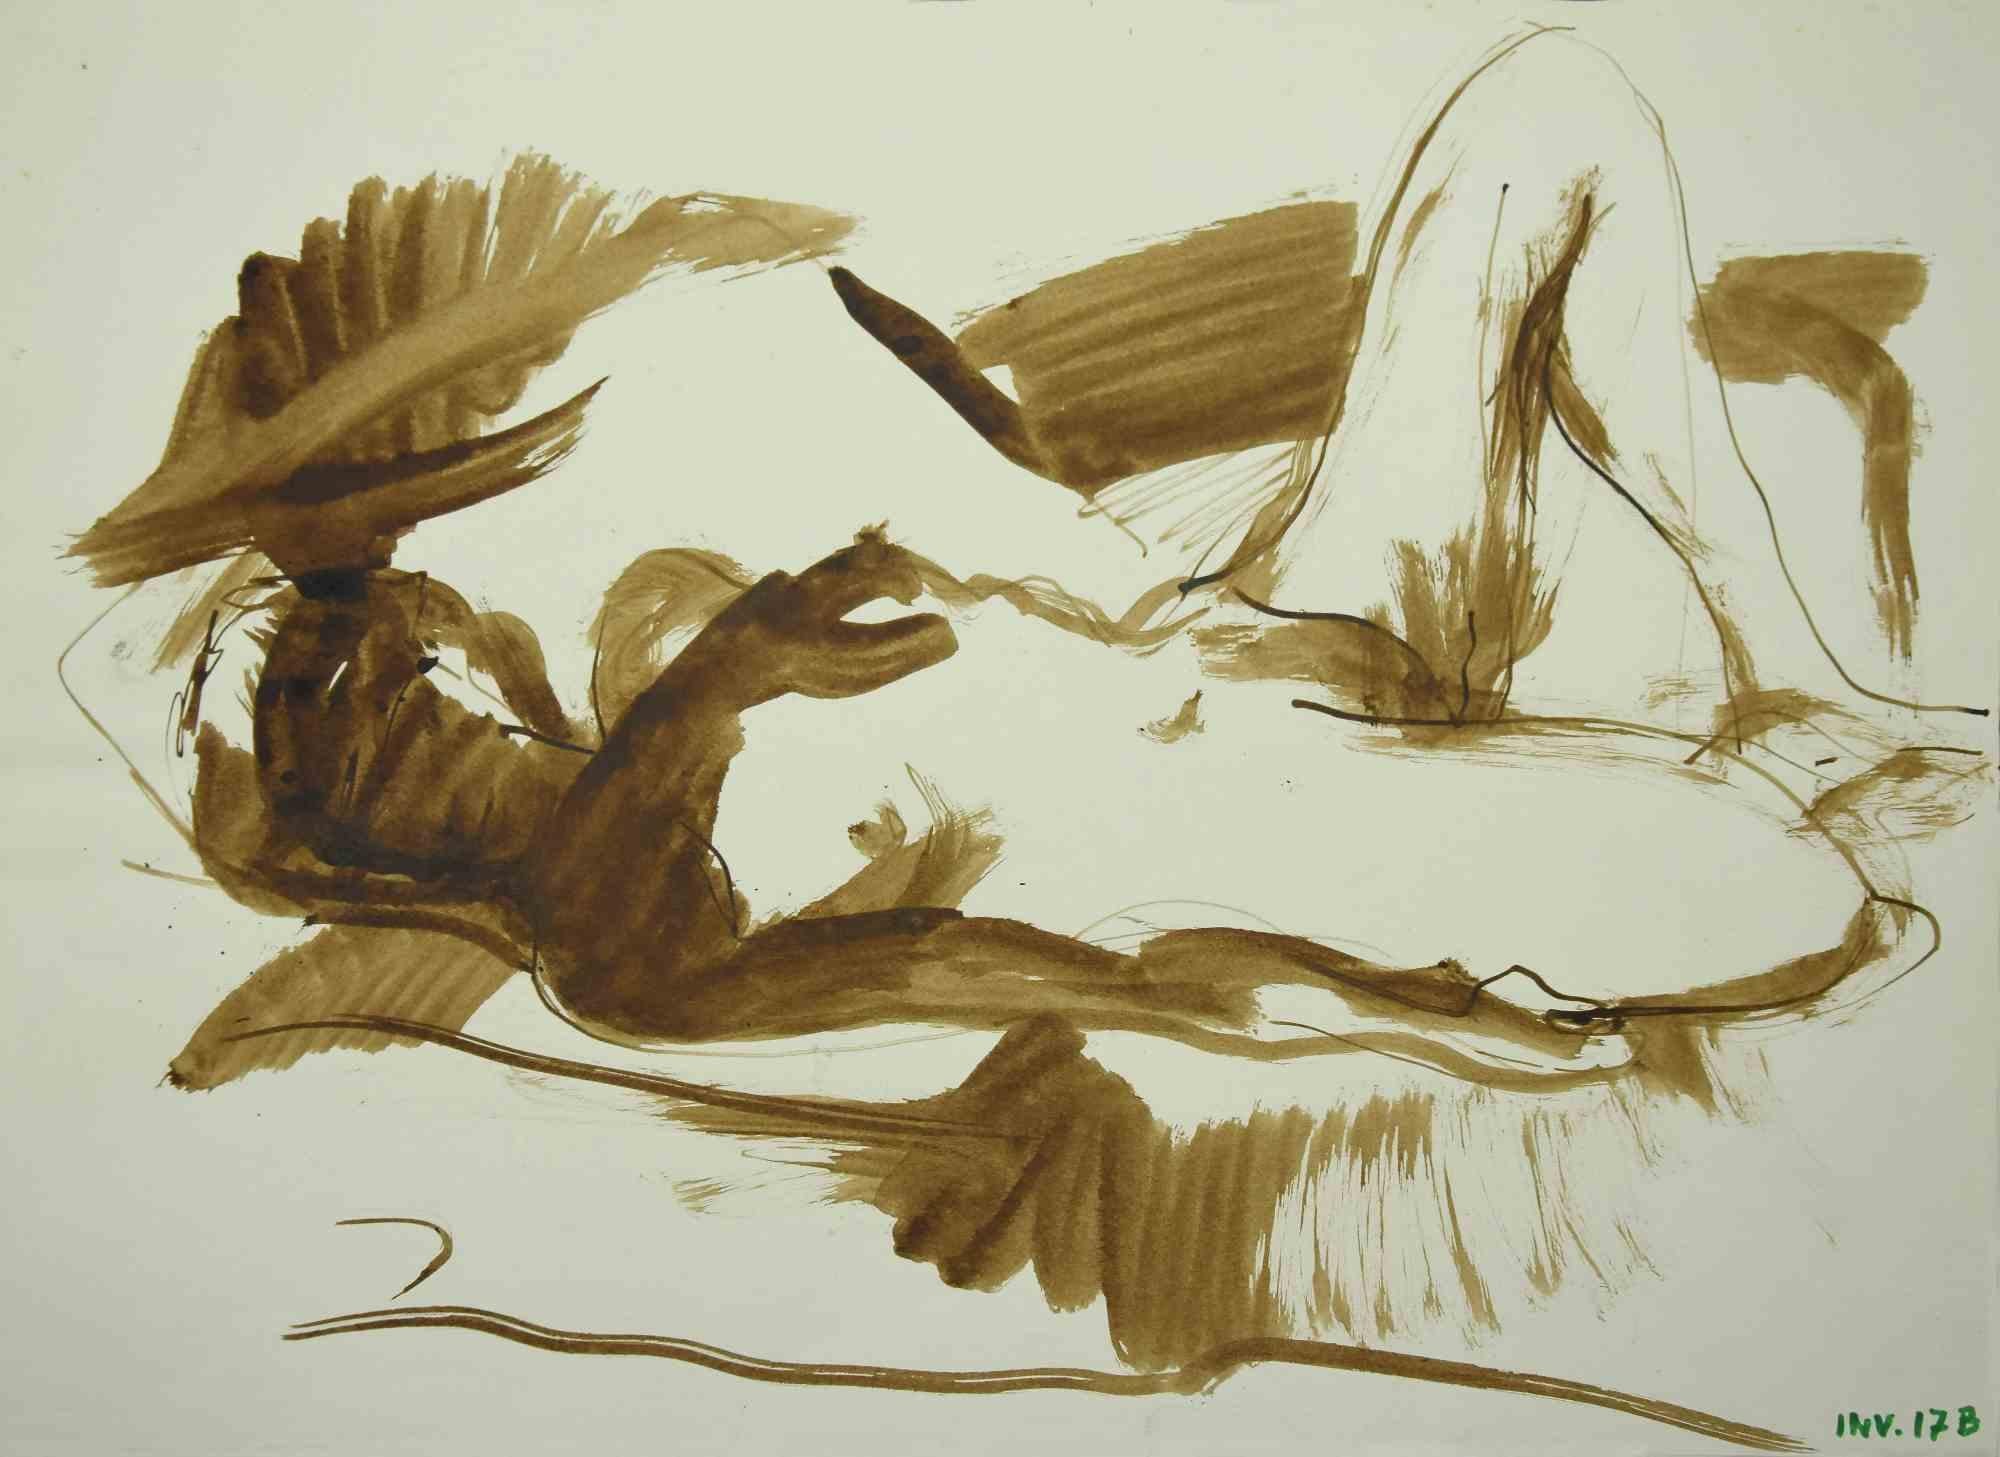 Reclined Nude ist eine Originalzeichnung in Tusche und Aquarell von Leo Guida aus den 1970er Jahren.

Guter Zustand. 

Leo Guida  (1992 - 2017). Mit seinem Gespür für aktuelle Themen, künstlerische Strömungen und historische Techniken ist es Leo